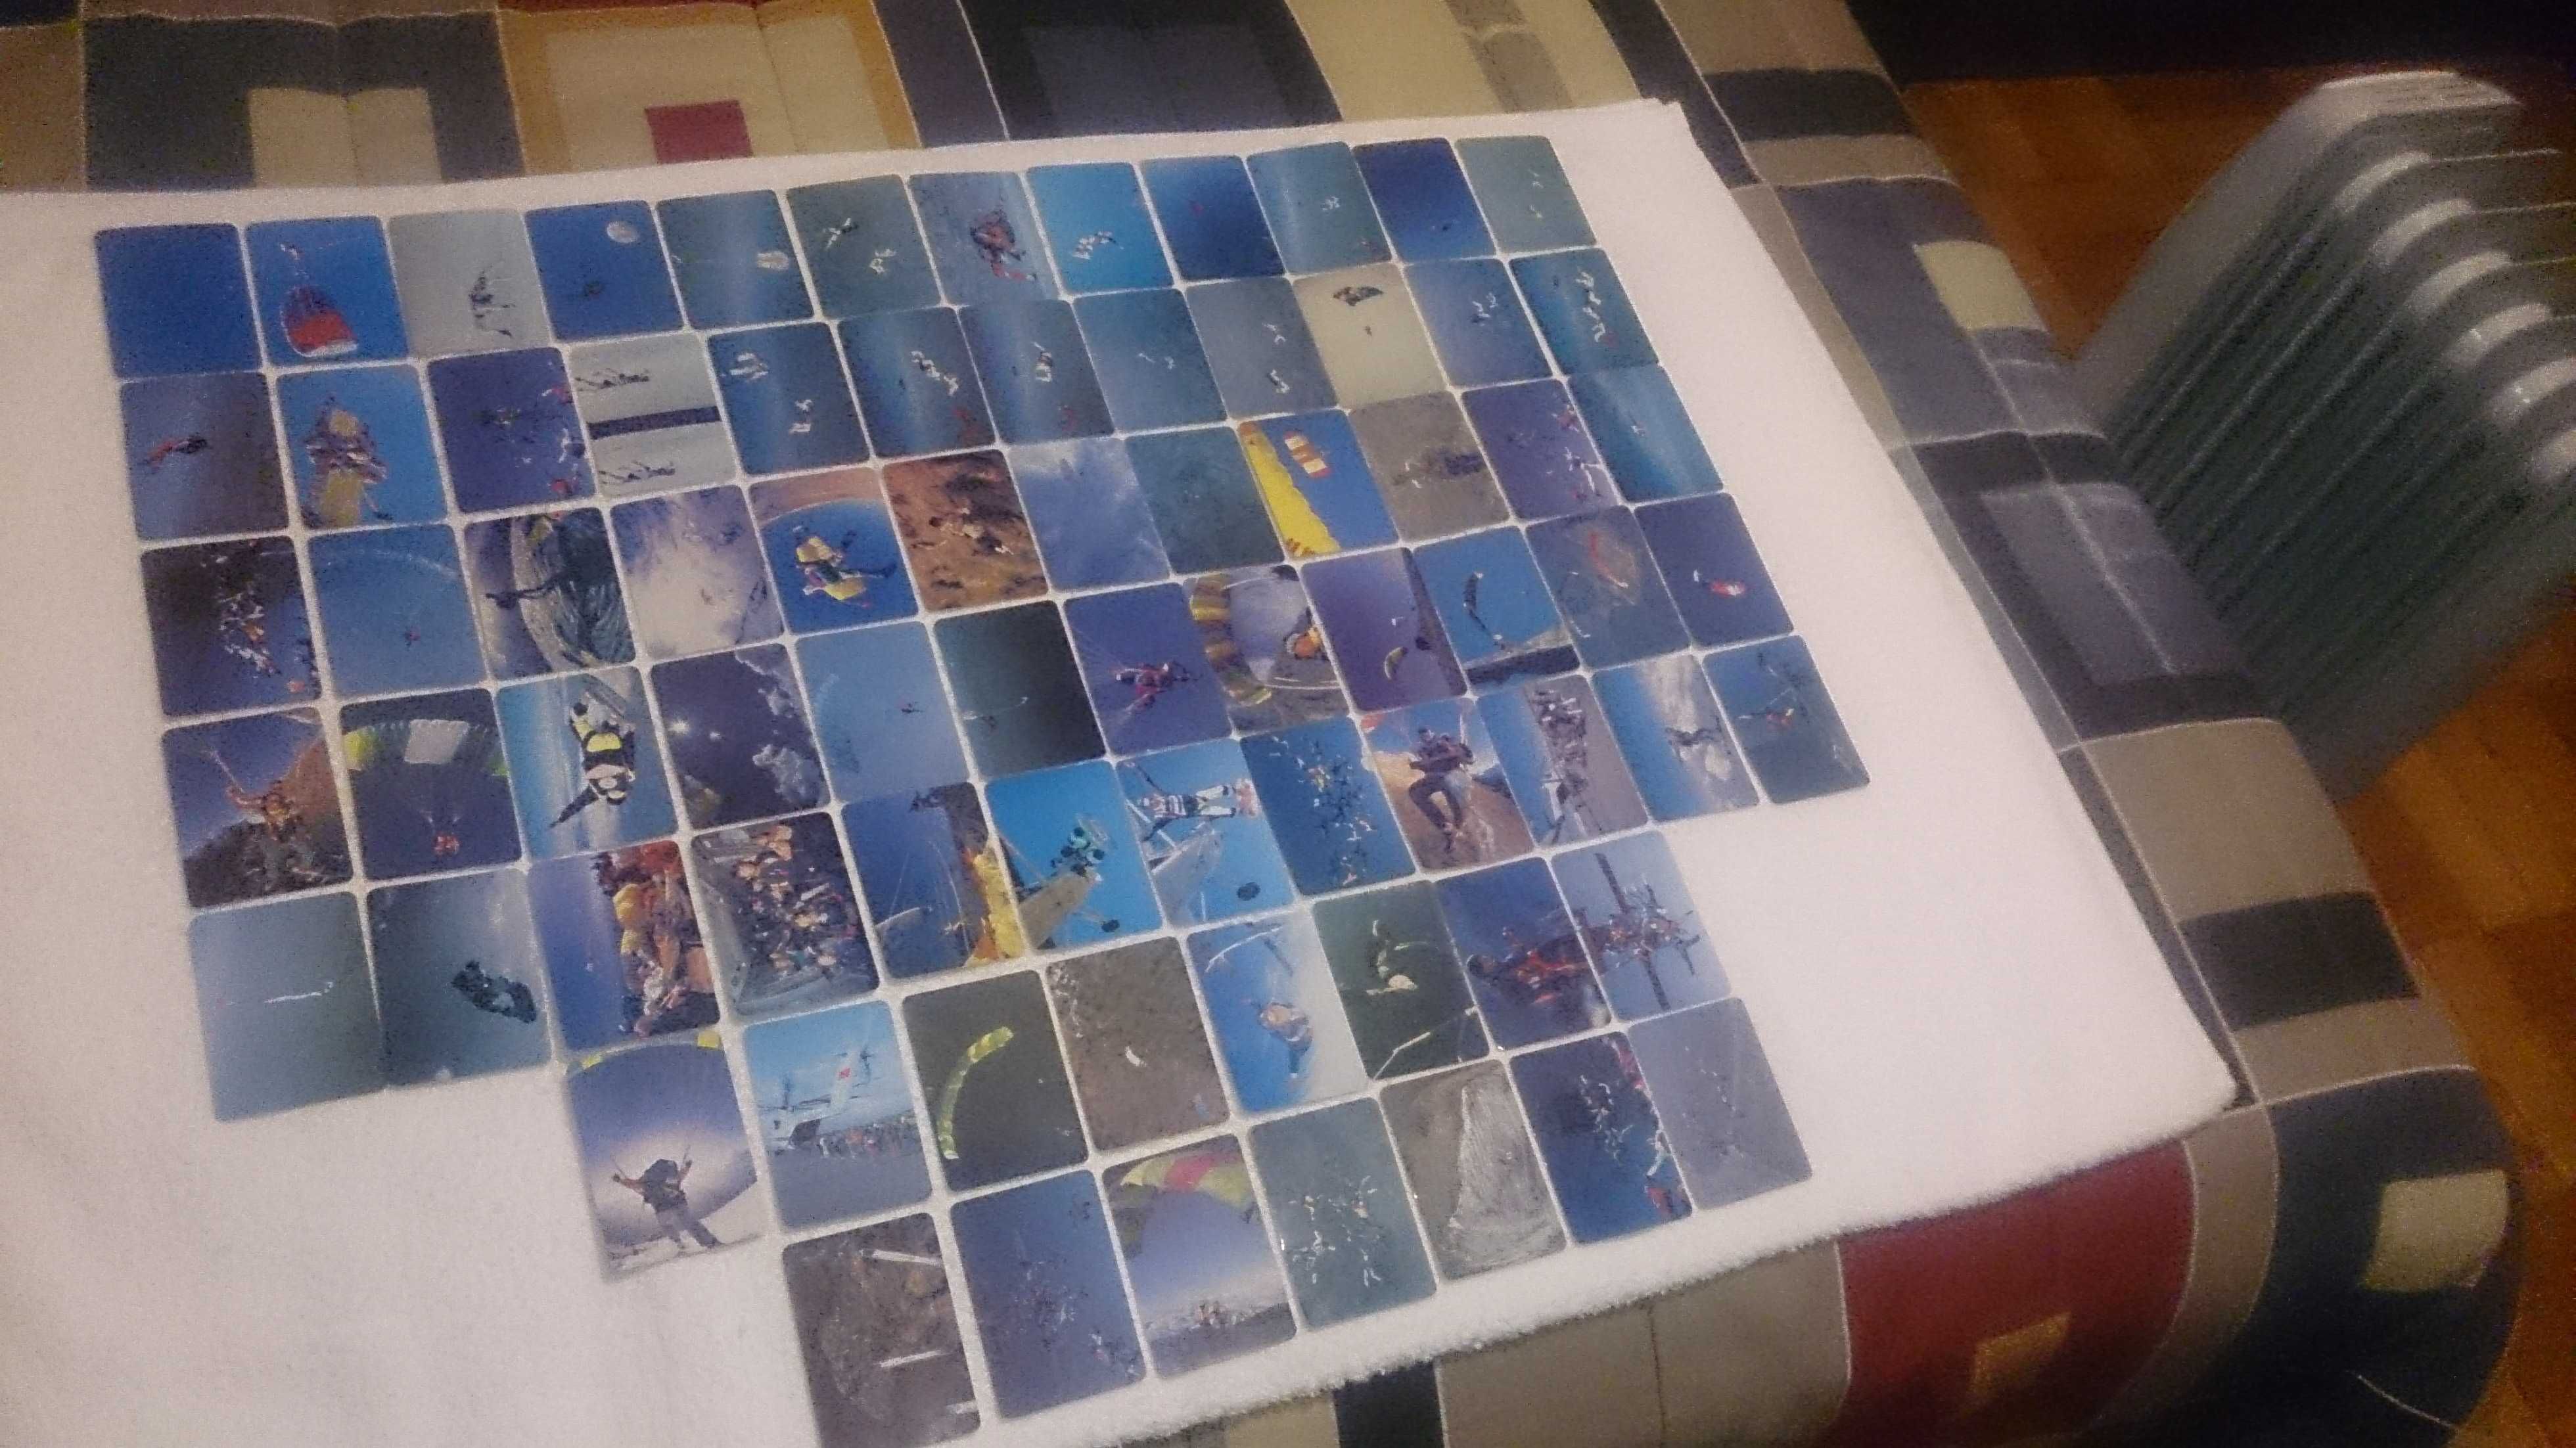 paraquedismo (75 calendários) coleção completa e numerada - rara 1993